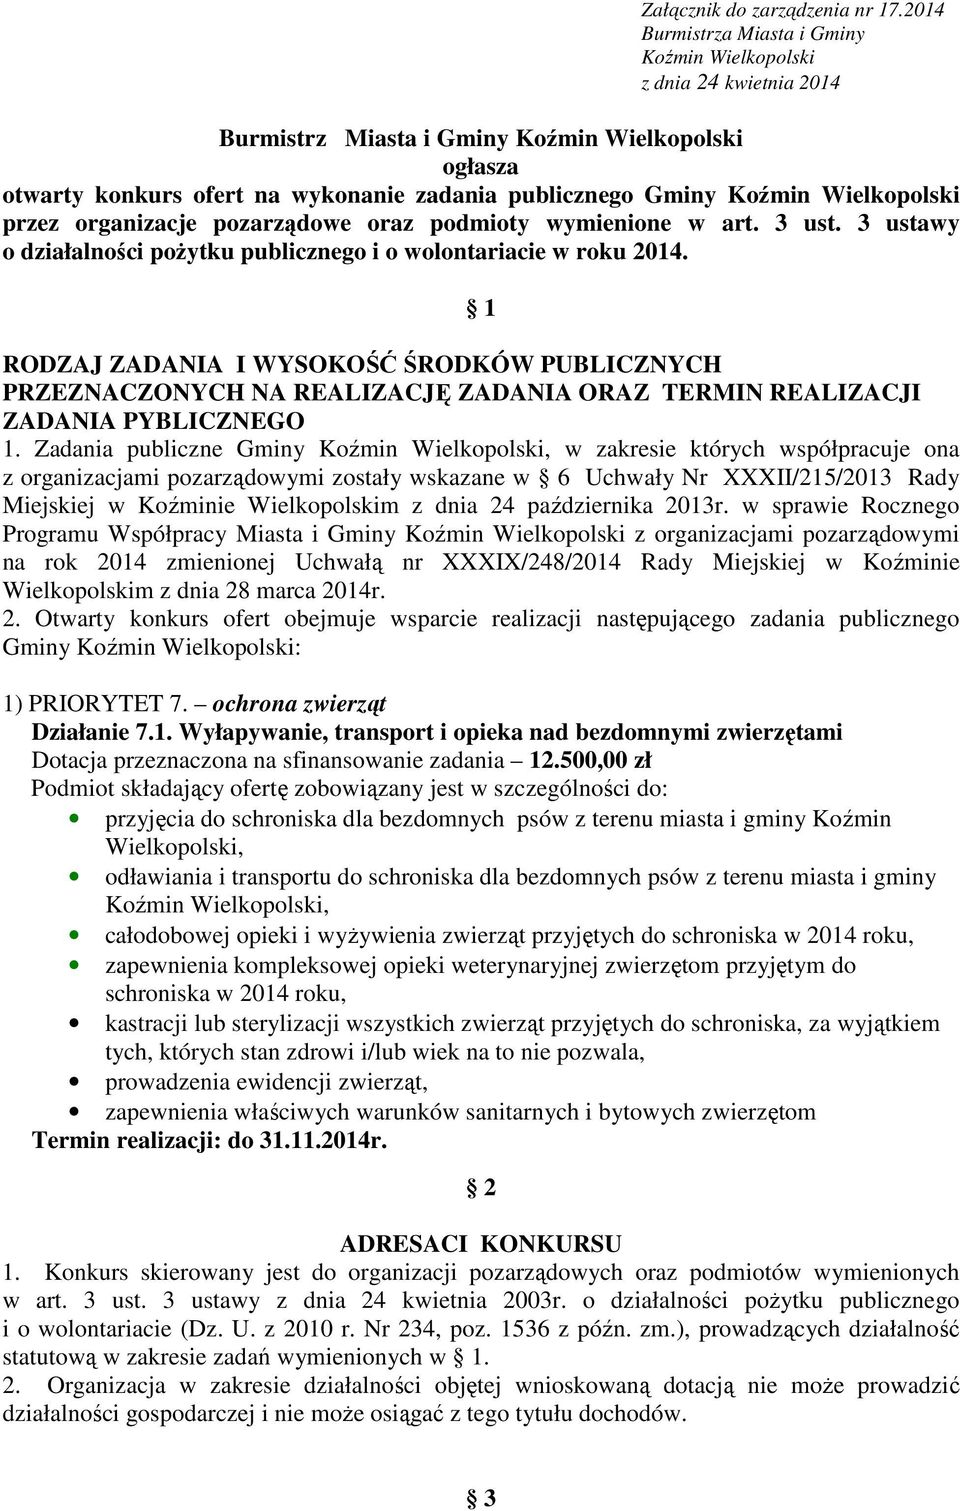 Wielkopolski przez organizacje pozarządowe oraz podmioty wymienione w art. 3 ust. 3 ustawy o działalności pożytku publicznego i o wolontariacie w roku 2014.